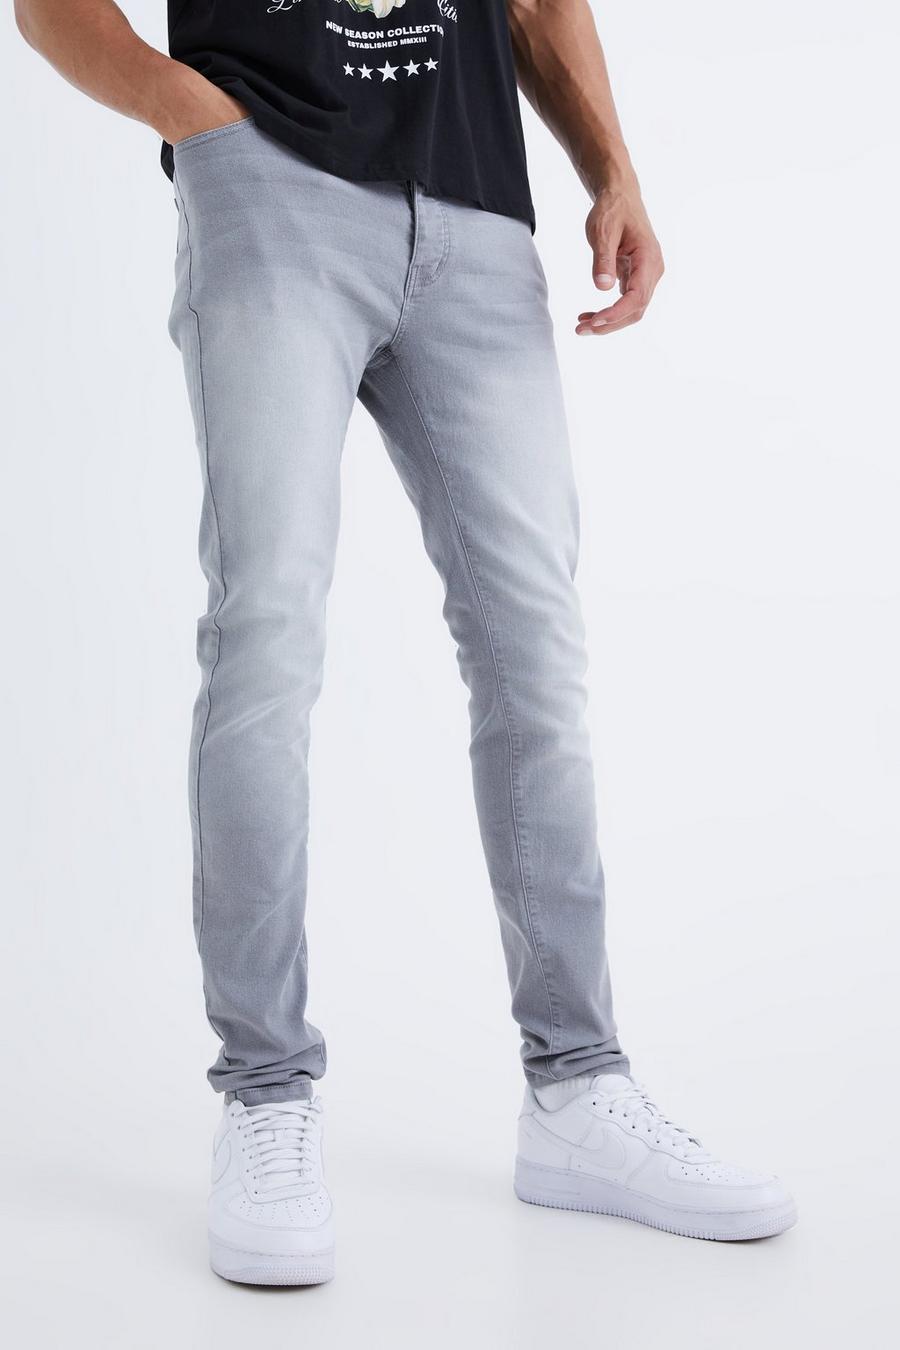 Mid grey Tall Skinny Stretch Jean